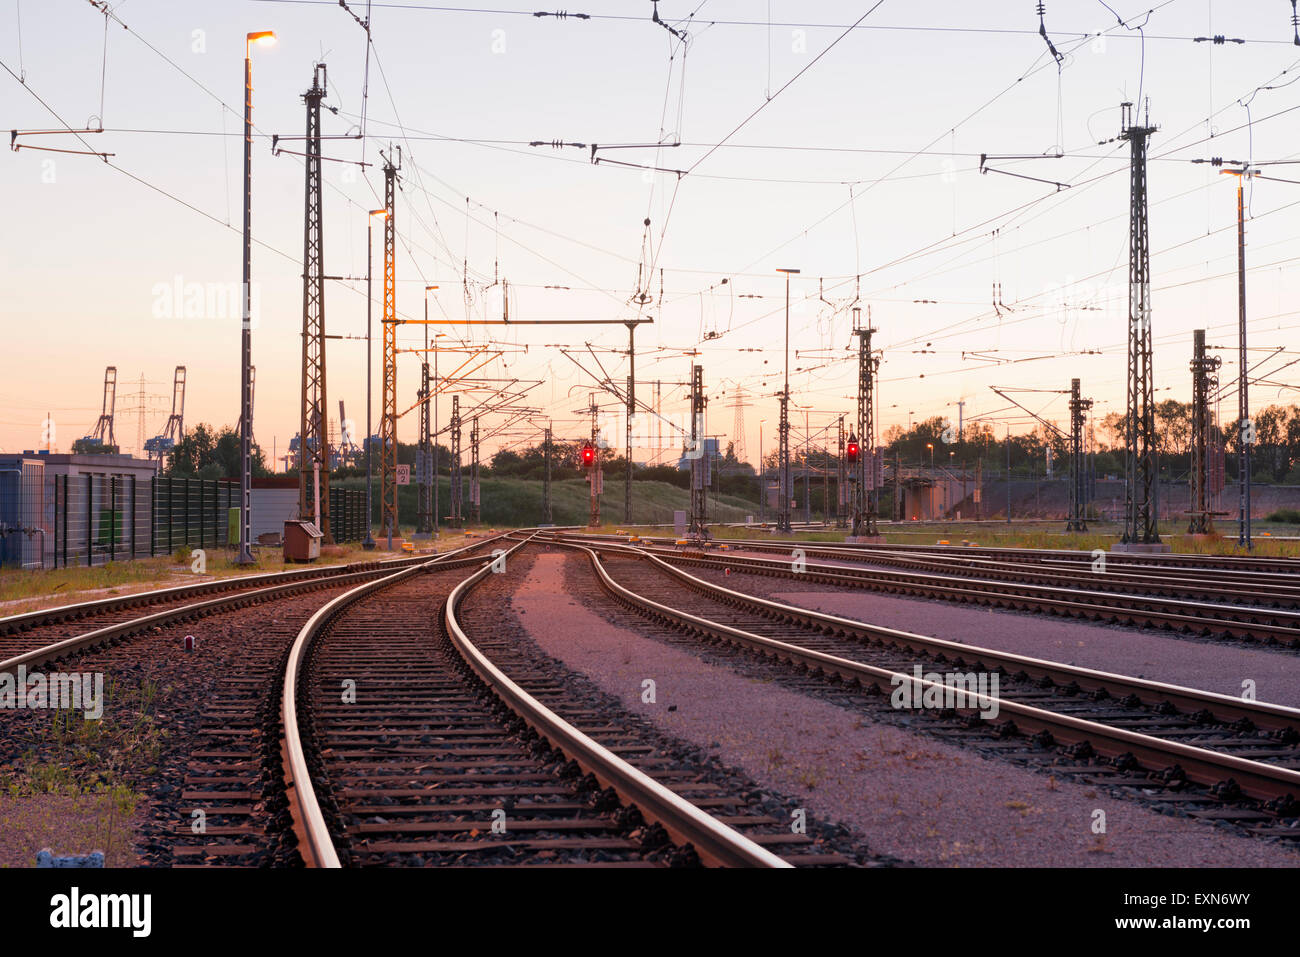 Germany, Hamburg, railway track with catenary Stock Photo